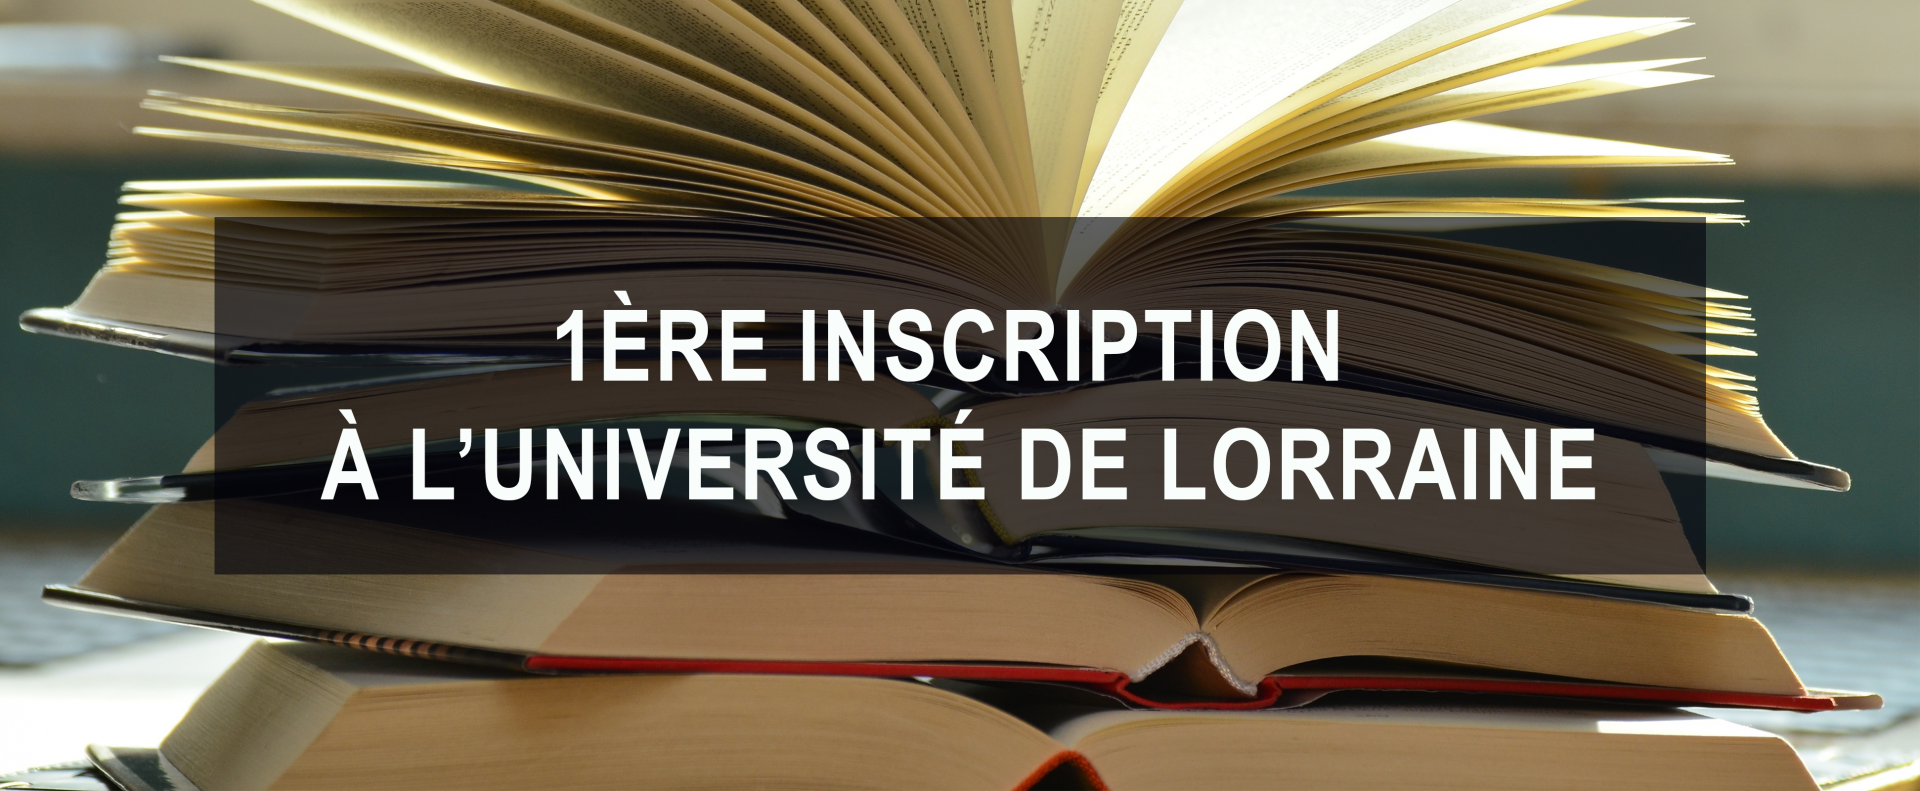 En savoir plus sur la 1ere inscription à l'Université de Lorraine